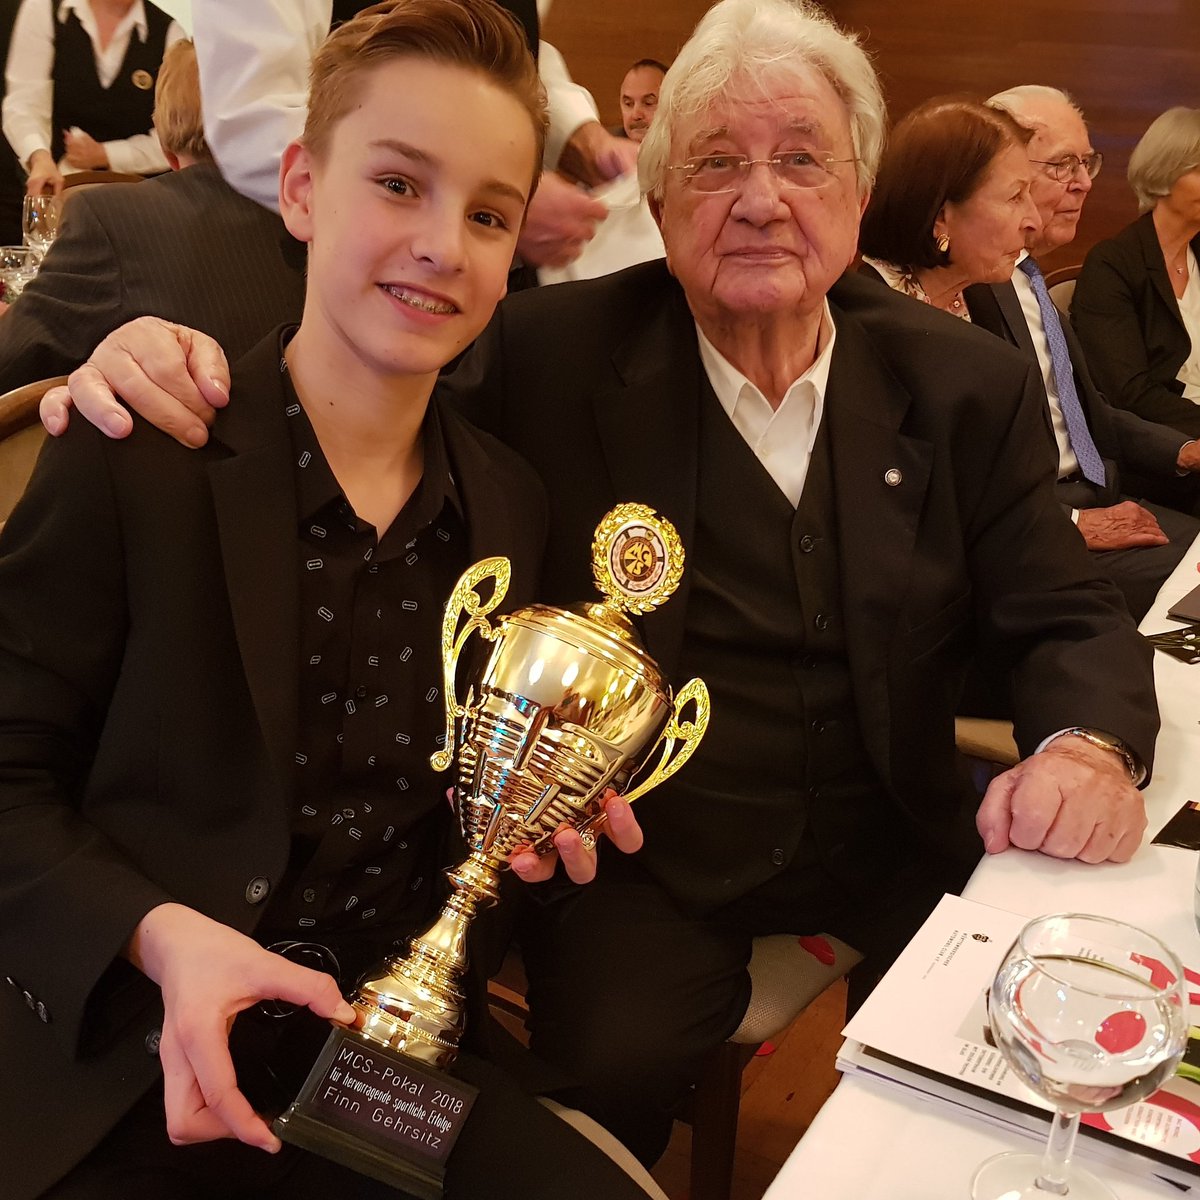 Mit Silberpfeil Legende Hans Hermann gestern bei der Ehrung des MCS Stuttgart. Vielen lieben Dank für die Ehrung. #hanshermann #silberpfeil #mcsstuttgart